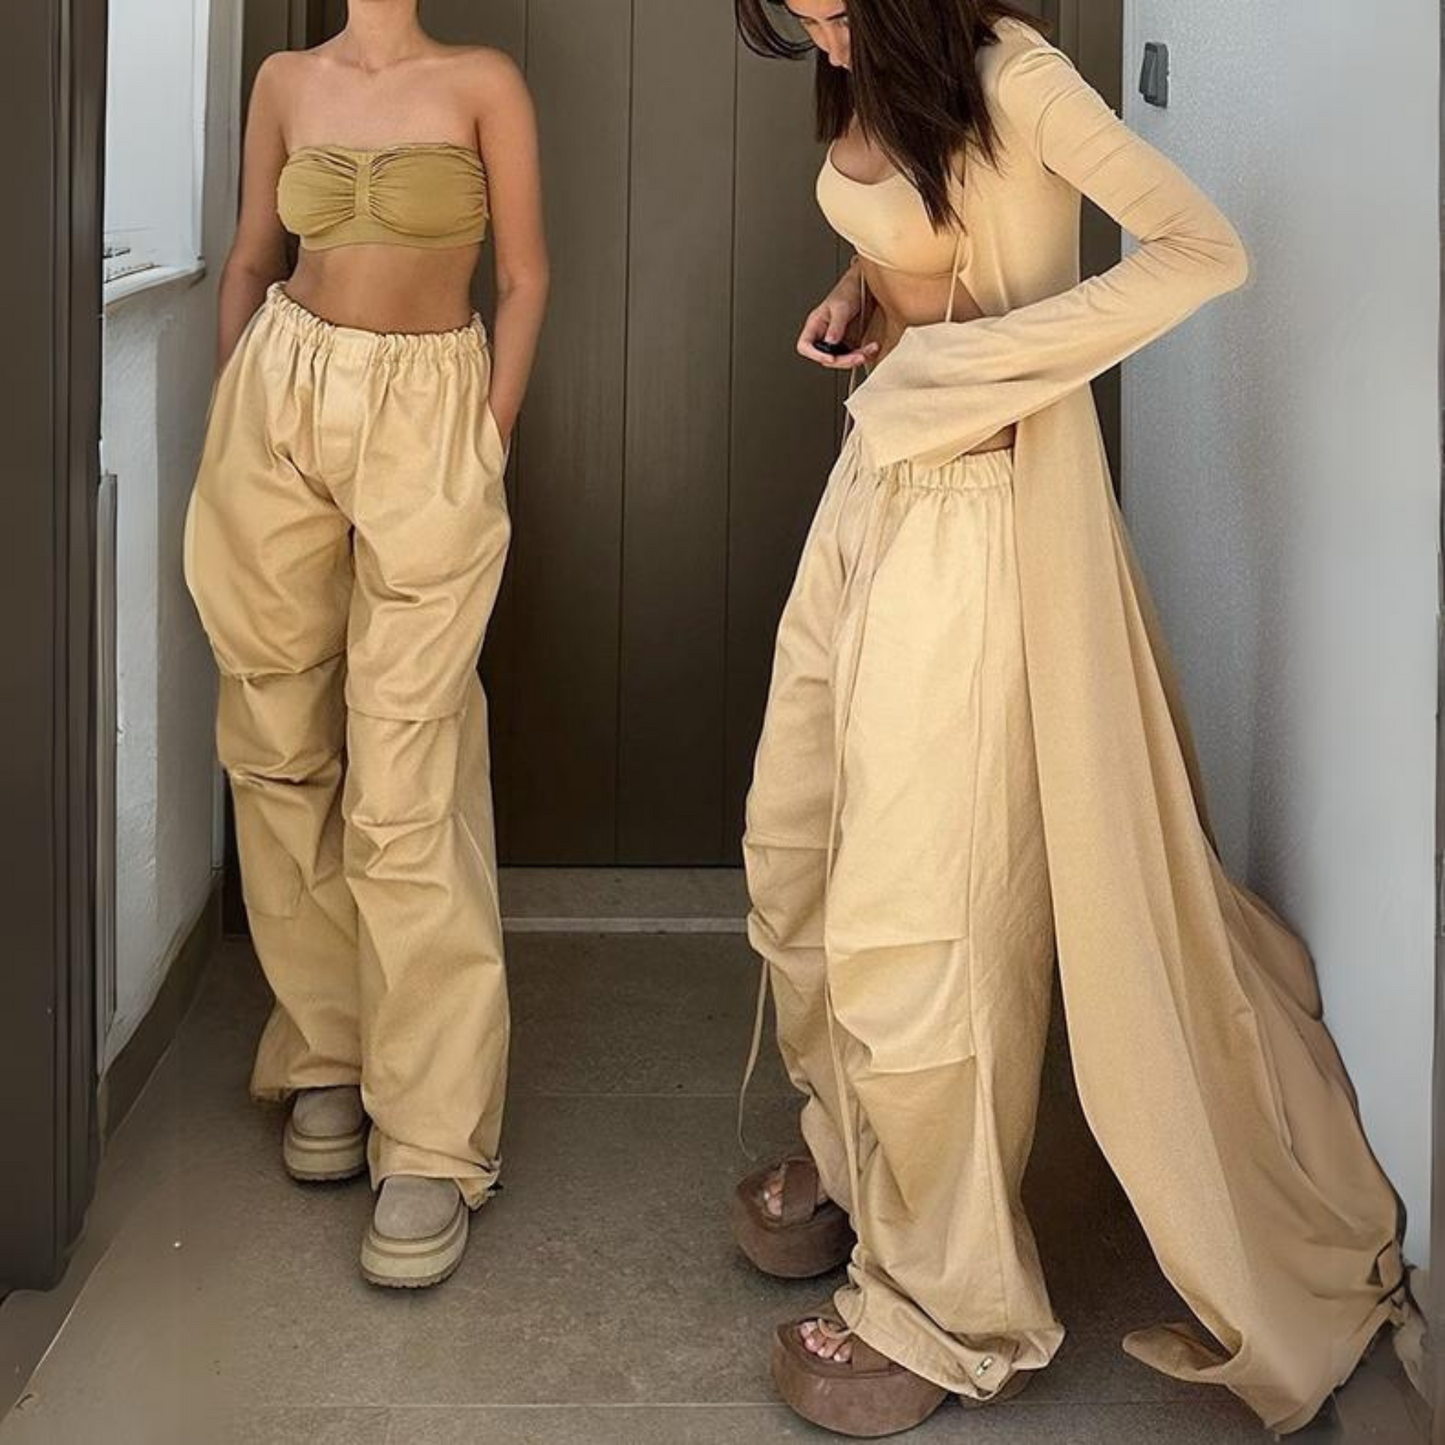 khaki cargo pants for women, two women standing wearing women's cargo pants